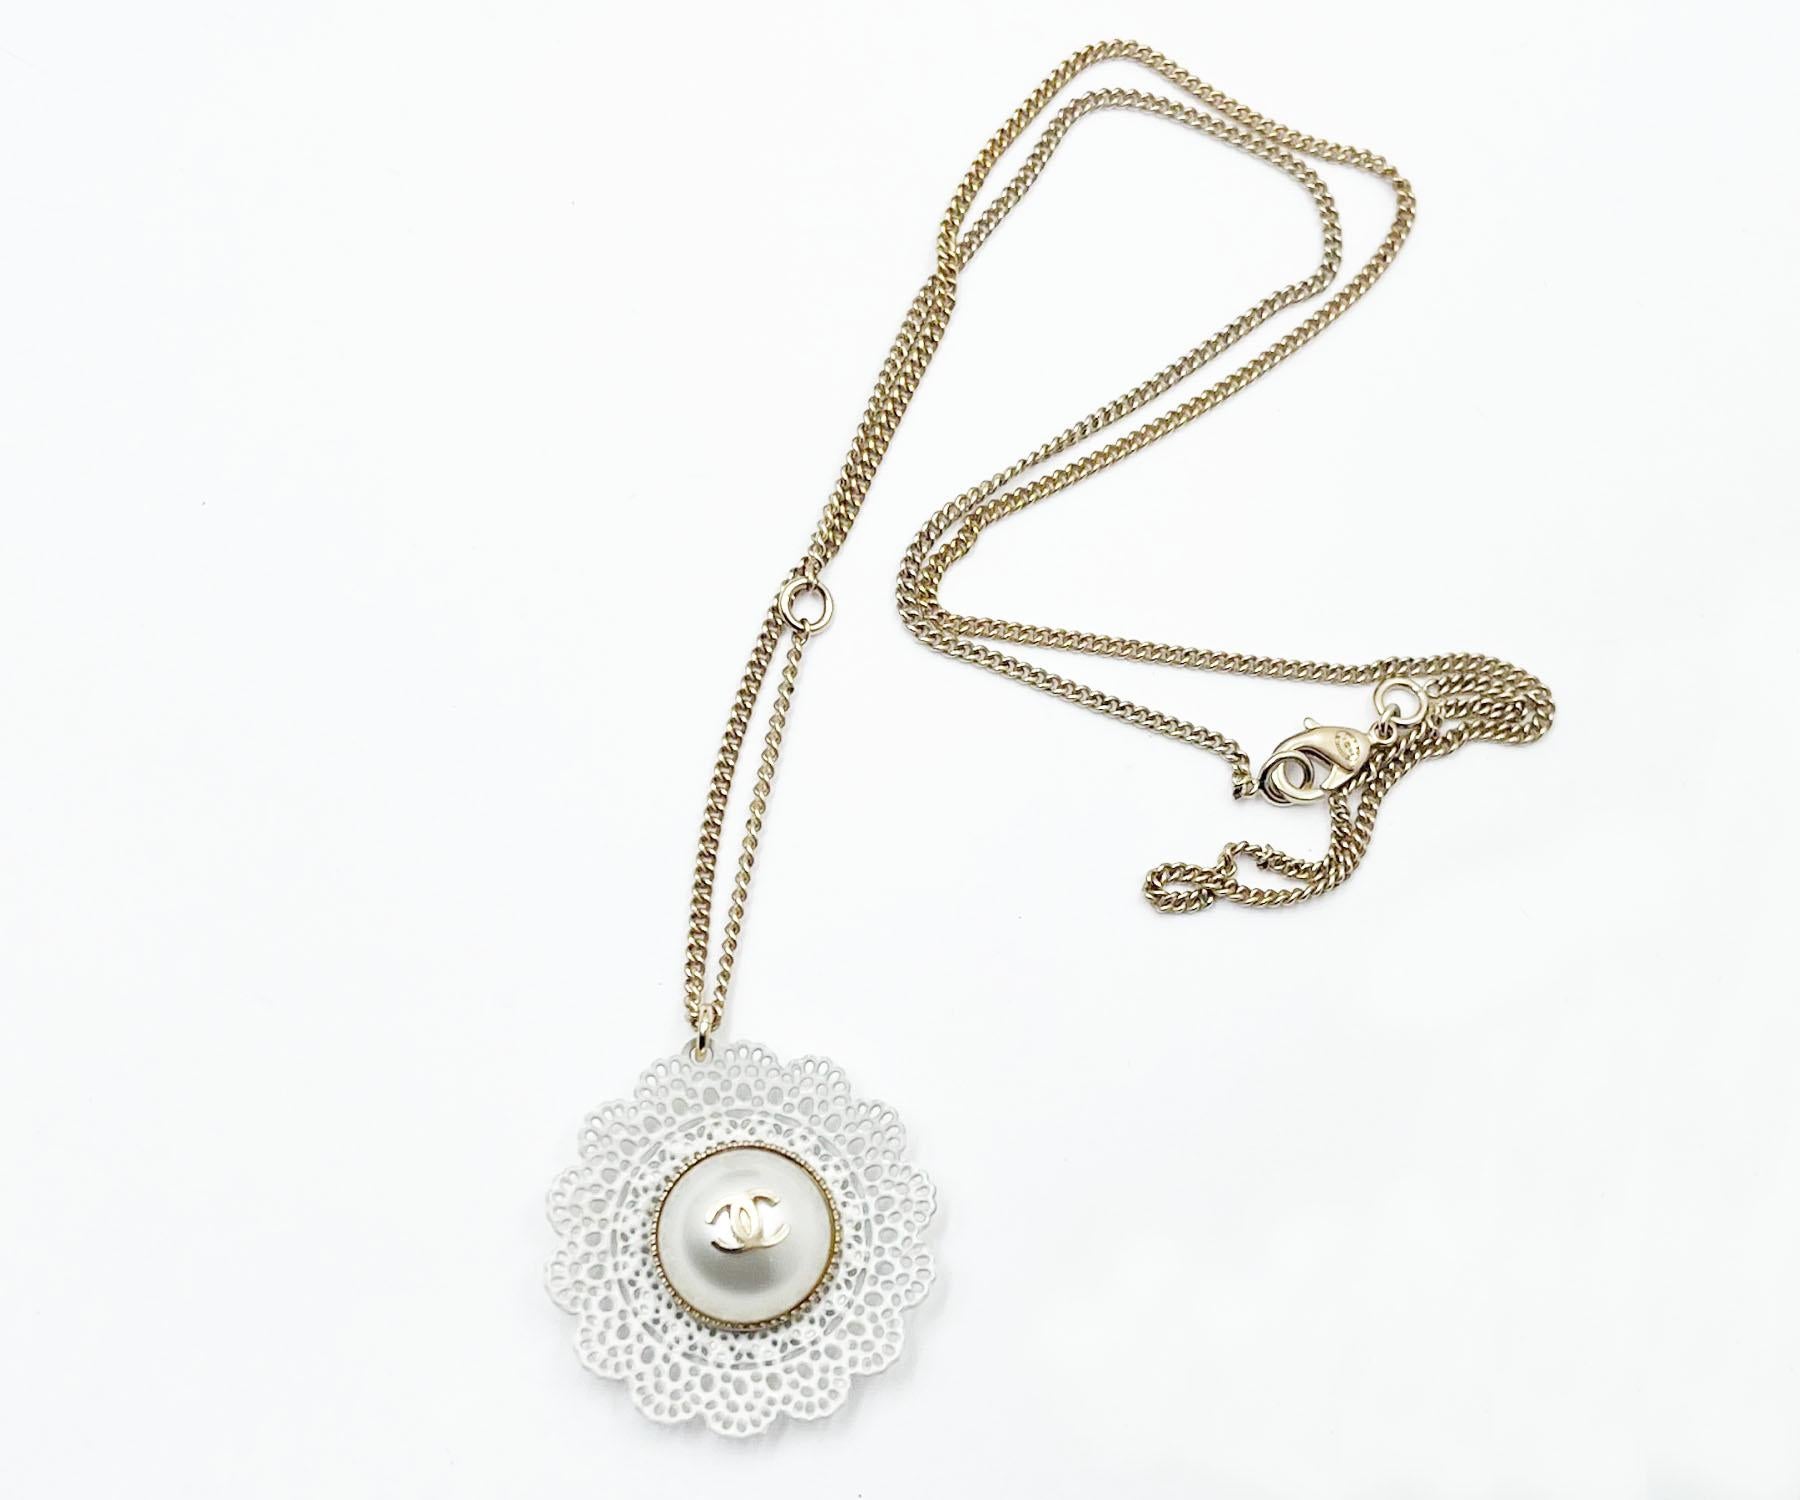 Chanel Collier fleur en dentelle CC et or 

*Marked 15
*Fabriqué en Italie
*Livré avec la boîte et la pochette d'origine.

-Il mesure environ 1,25